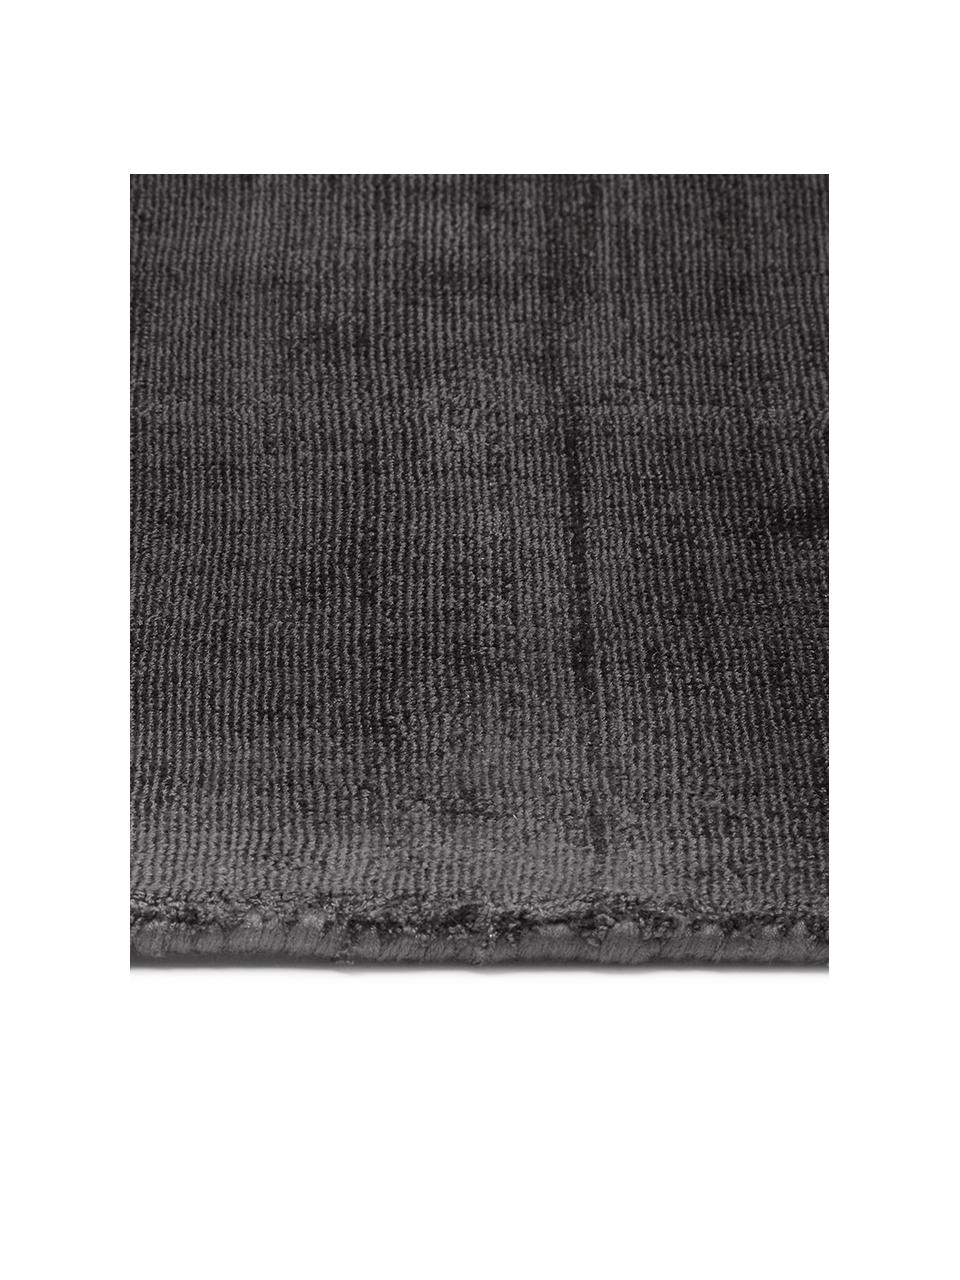 Tapis noir en viscose tissé main Jane, Anthracite-noir, larg. 200 x long. 300 cm (taille L)